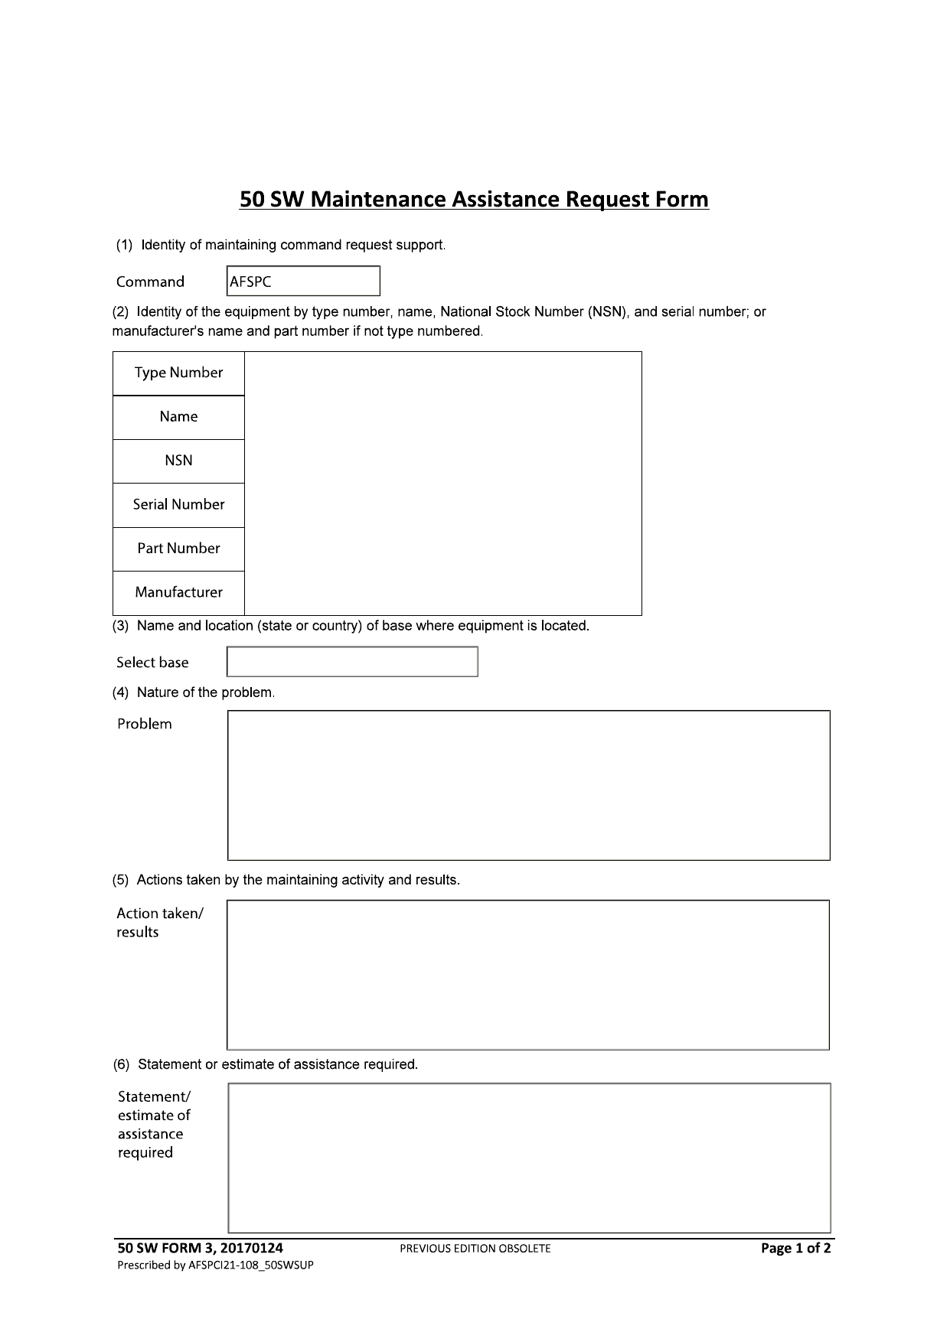 50 SW Form 3 Maintenance Assistance Request Form, Page 1